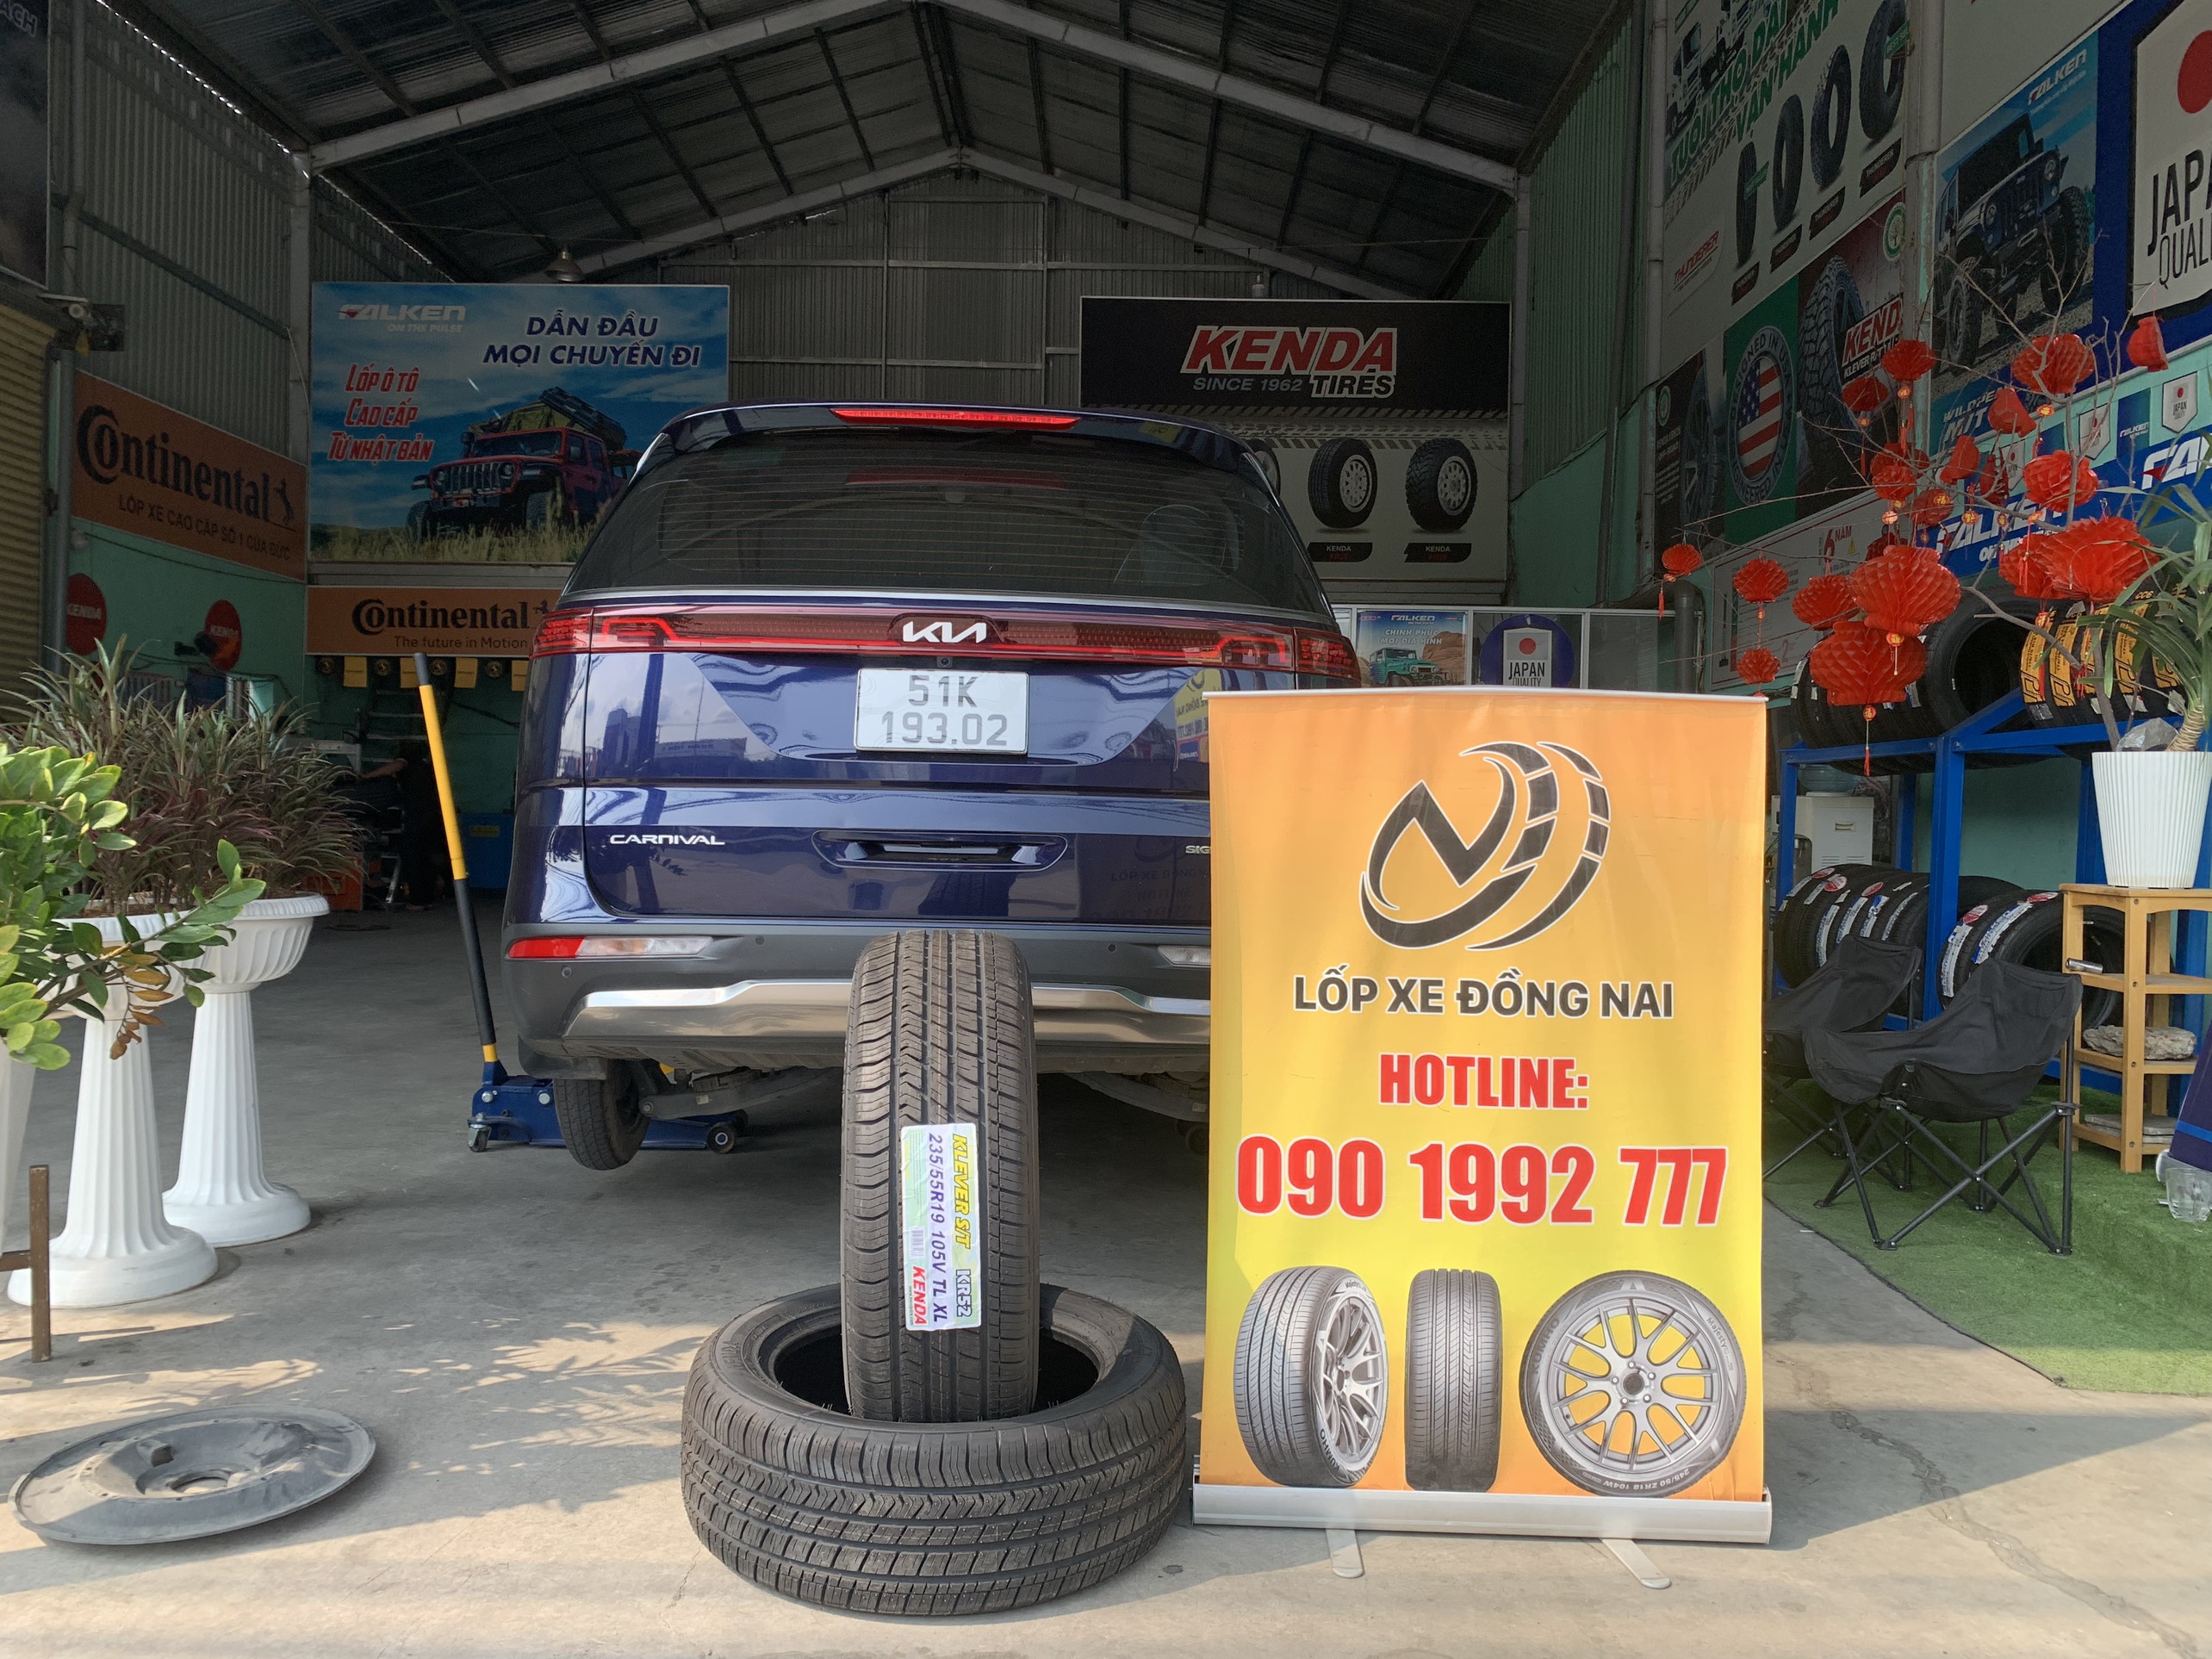 TƯ VẤN : Thay lốp xe Kia Carnival ở Trảng Bom, Đồng Nai.